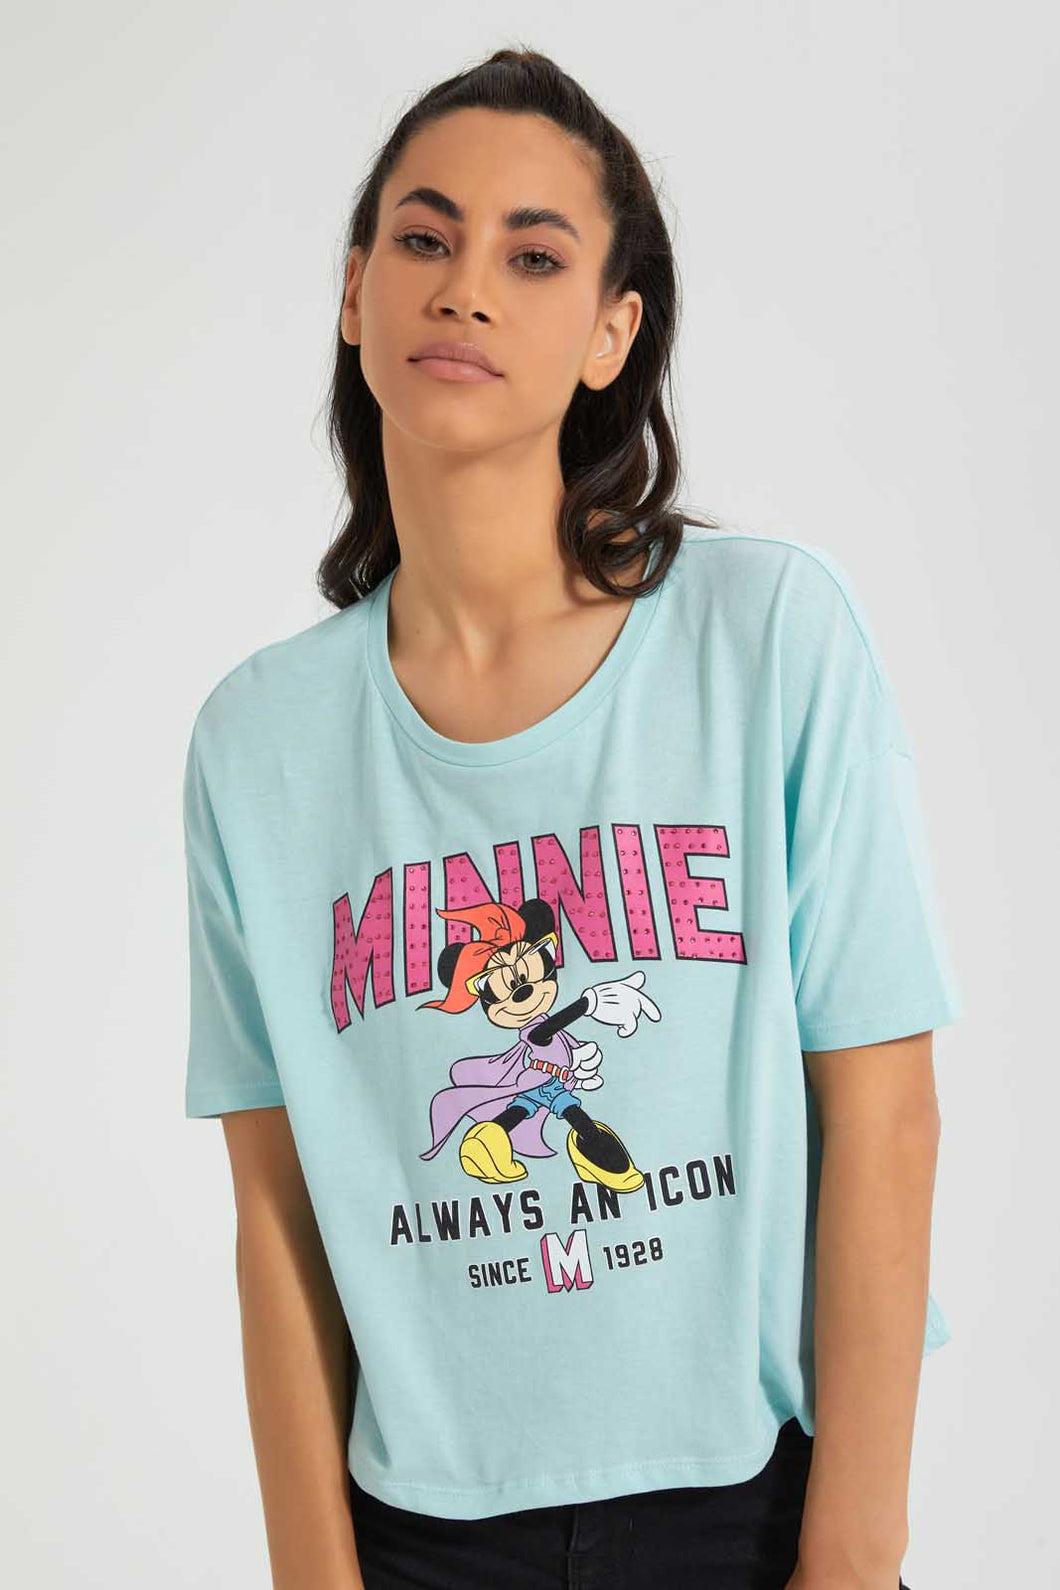 Teal Minnie Mouse Crop T-Shirt تيشيرت قصير باللون الأزرق فاتح بطبعة ميني ماوس